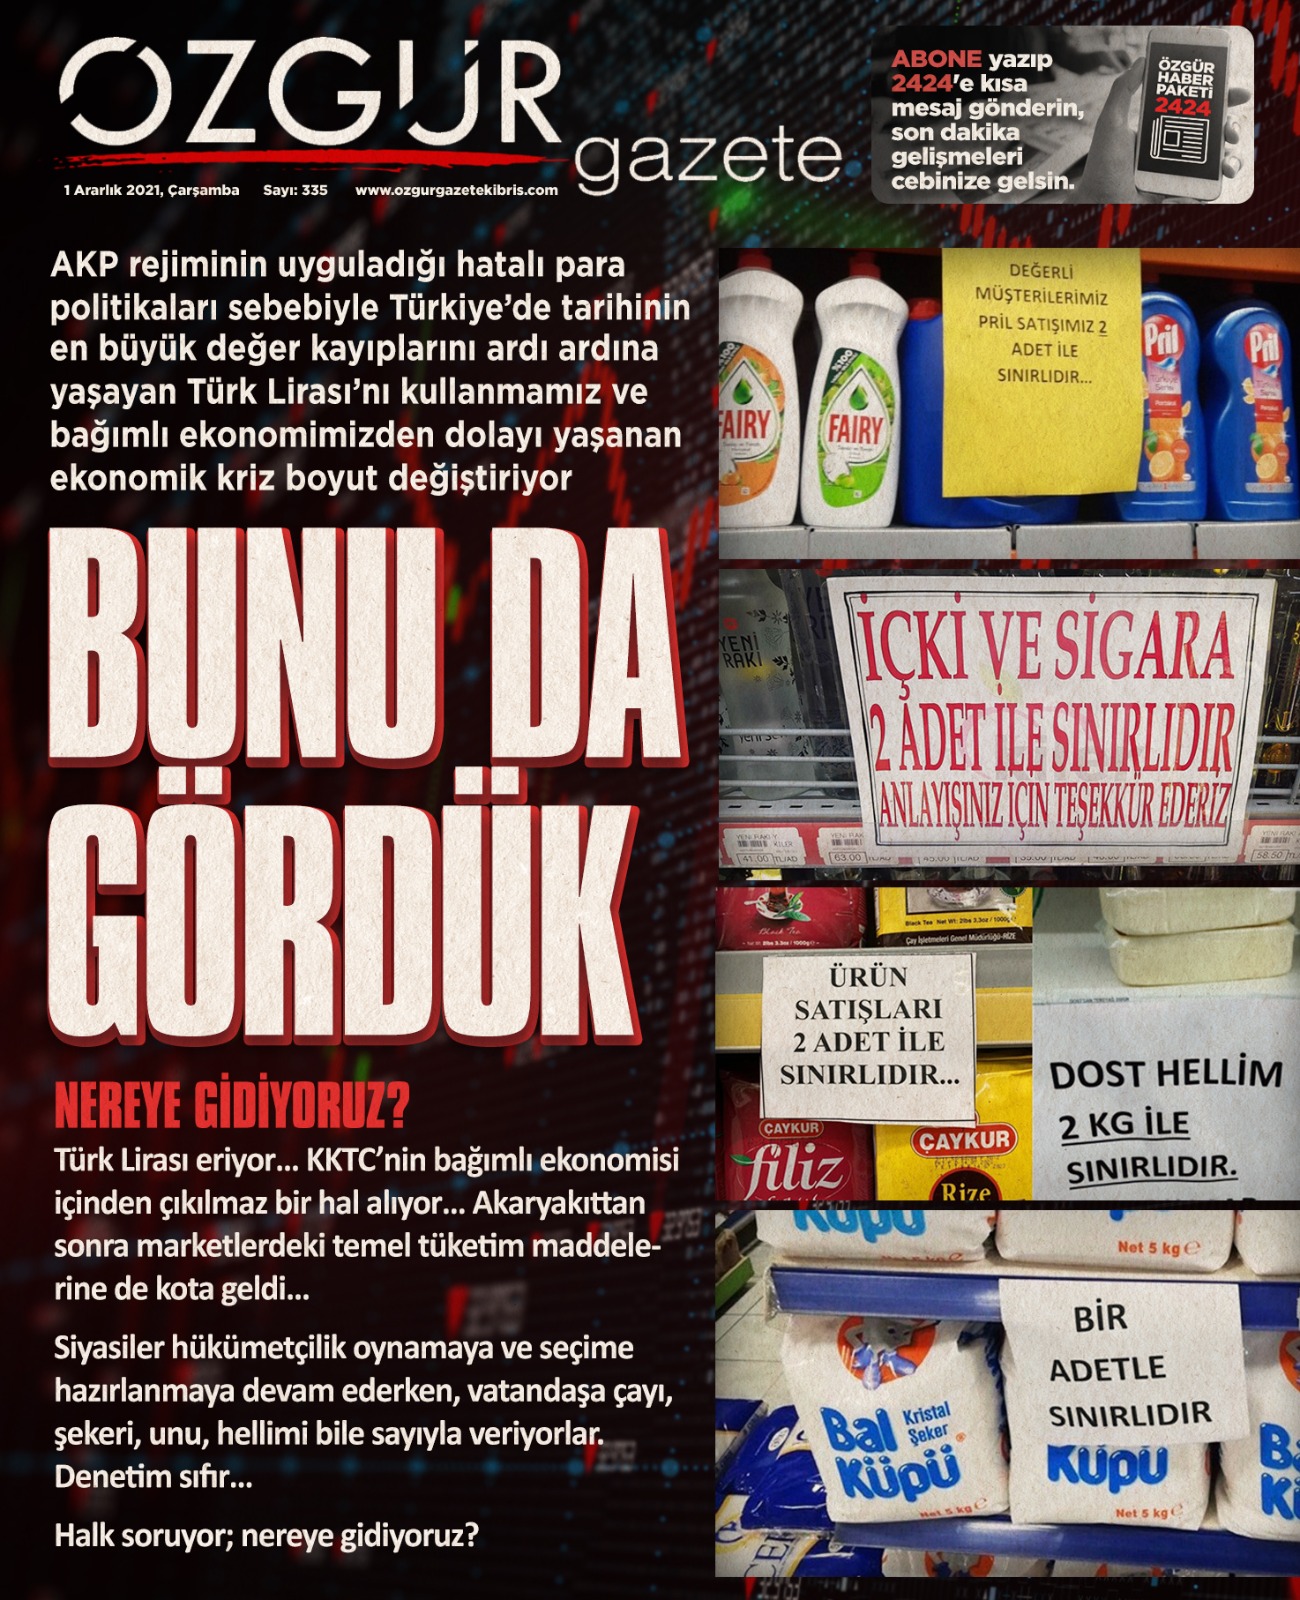 ozgur_gazete_kibris_ekonomi_kotali_urun_